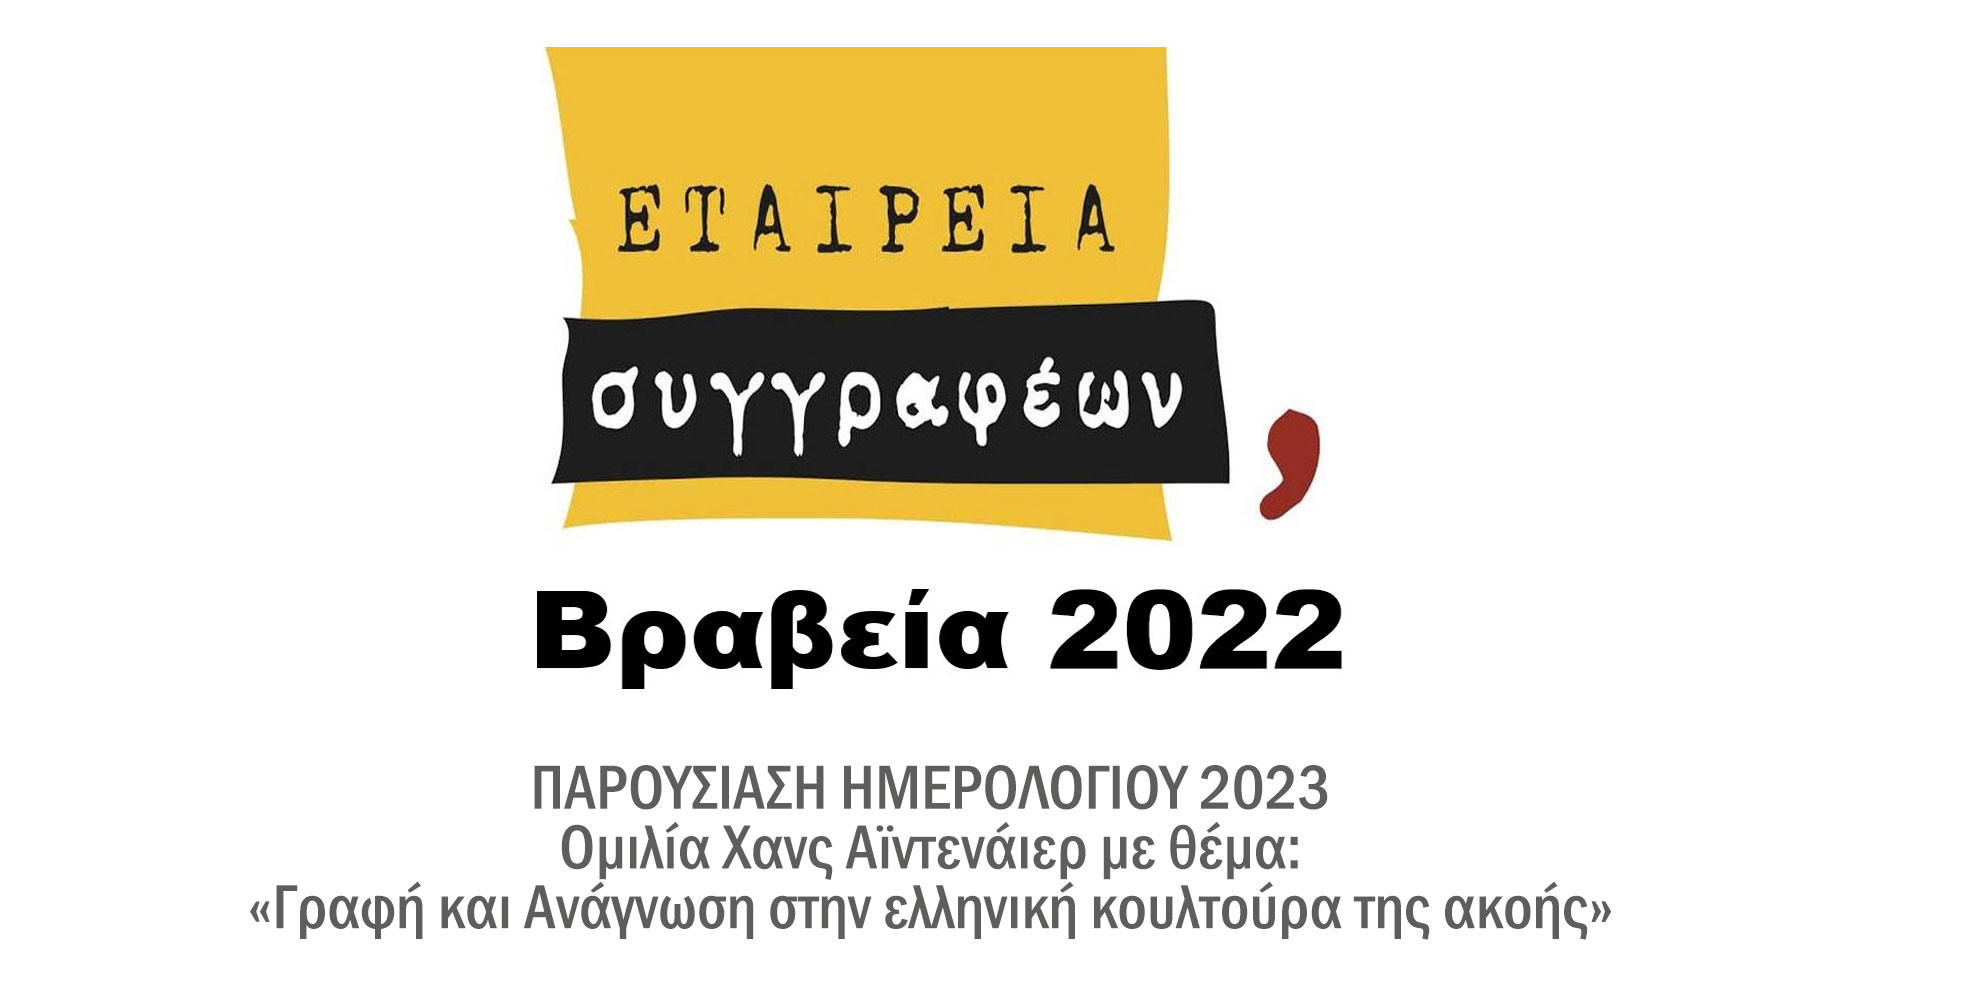 Εταιρεία Συγγραφέων, Βραβεία 2022 - Παρουσίαση Ημερολογίου 2023, Ομιλία Χανς Αϊντενάιερ